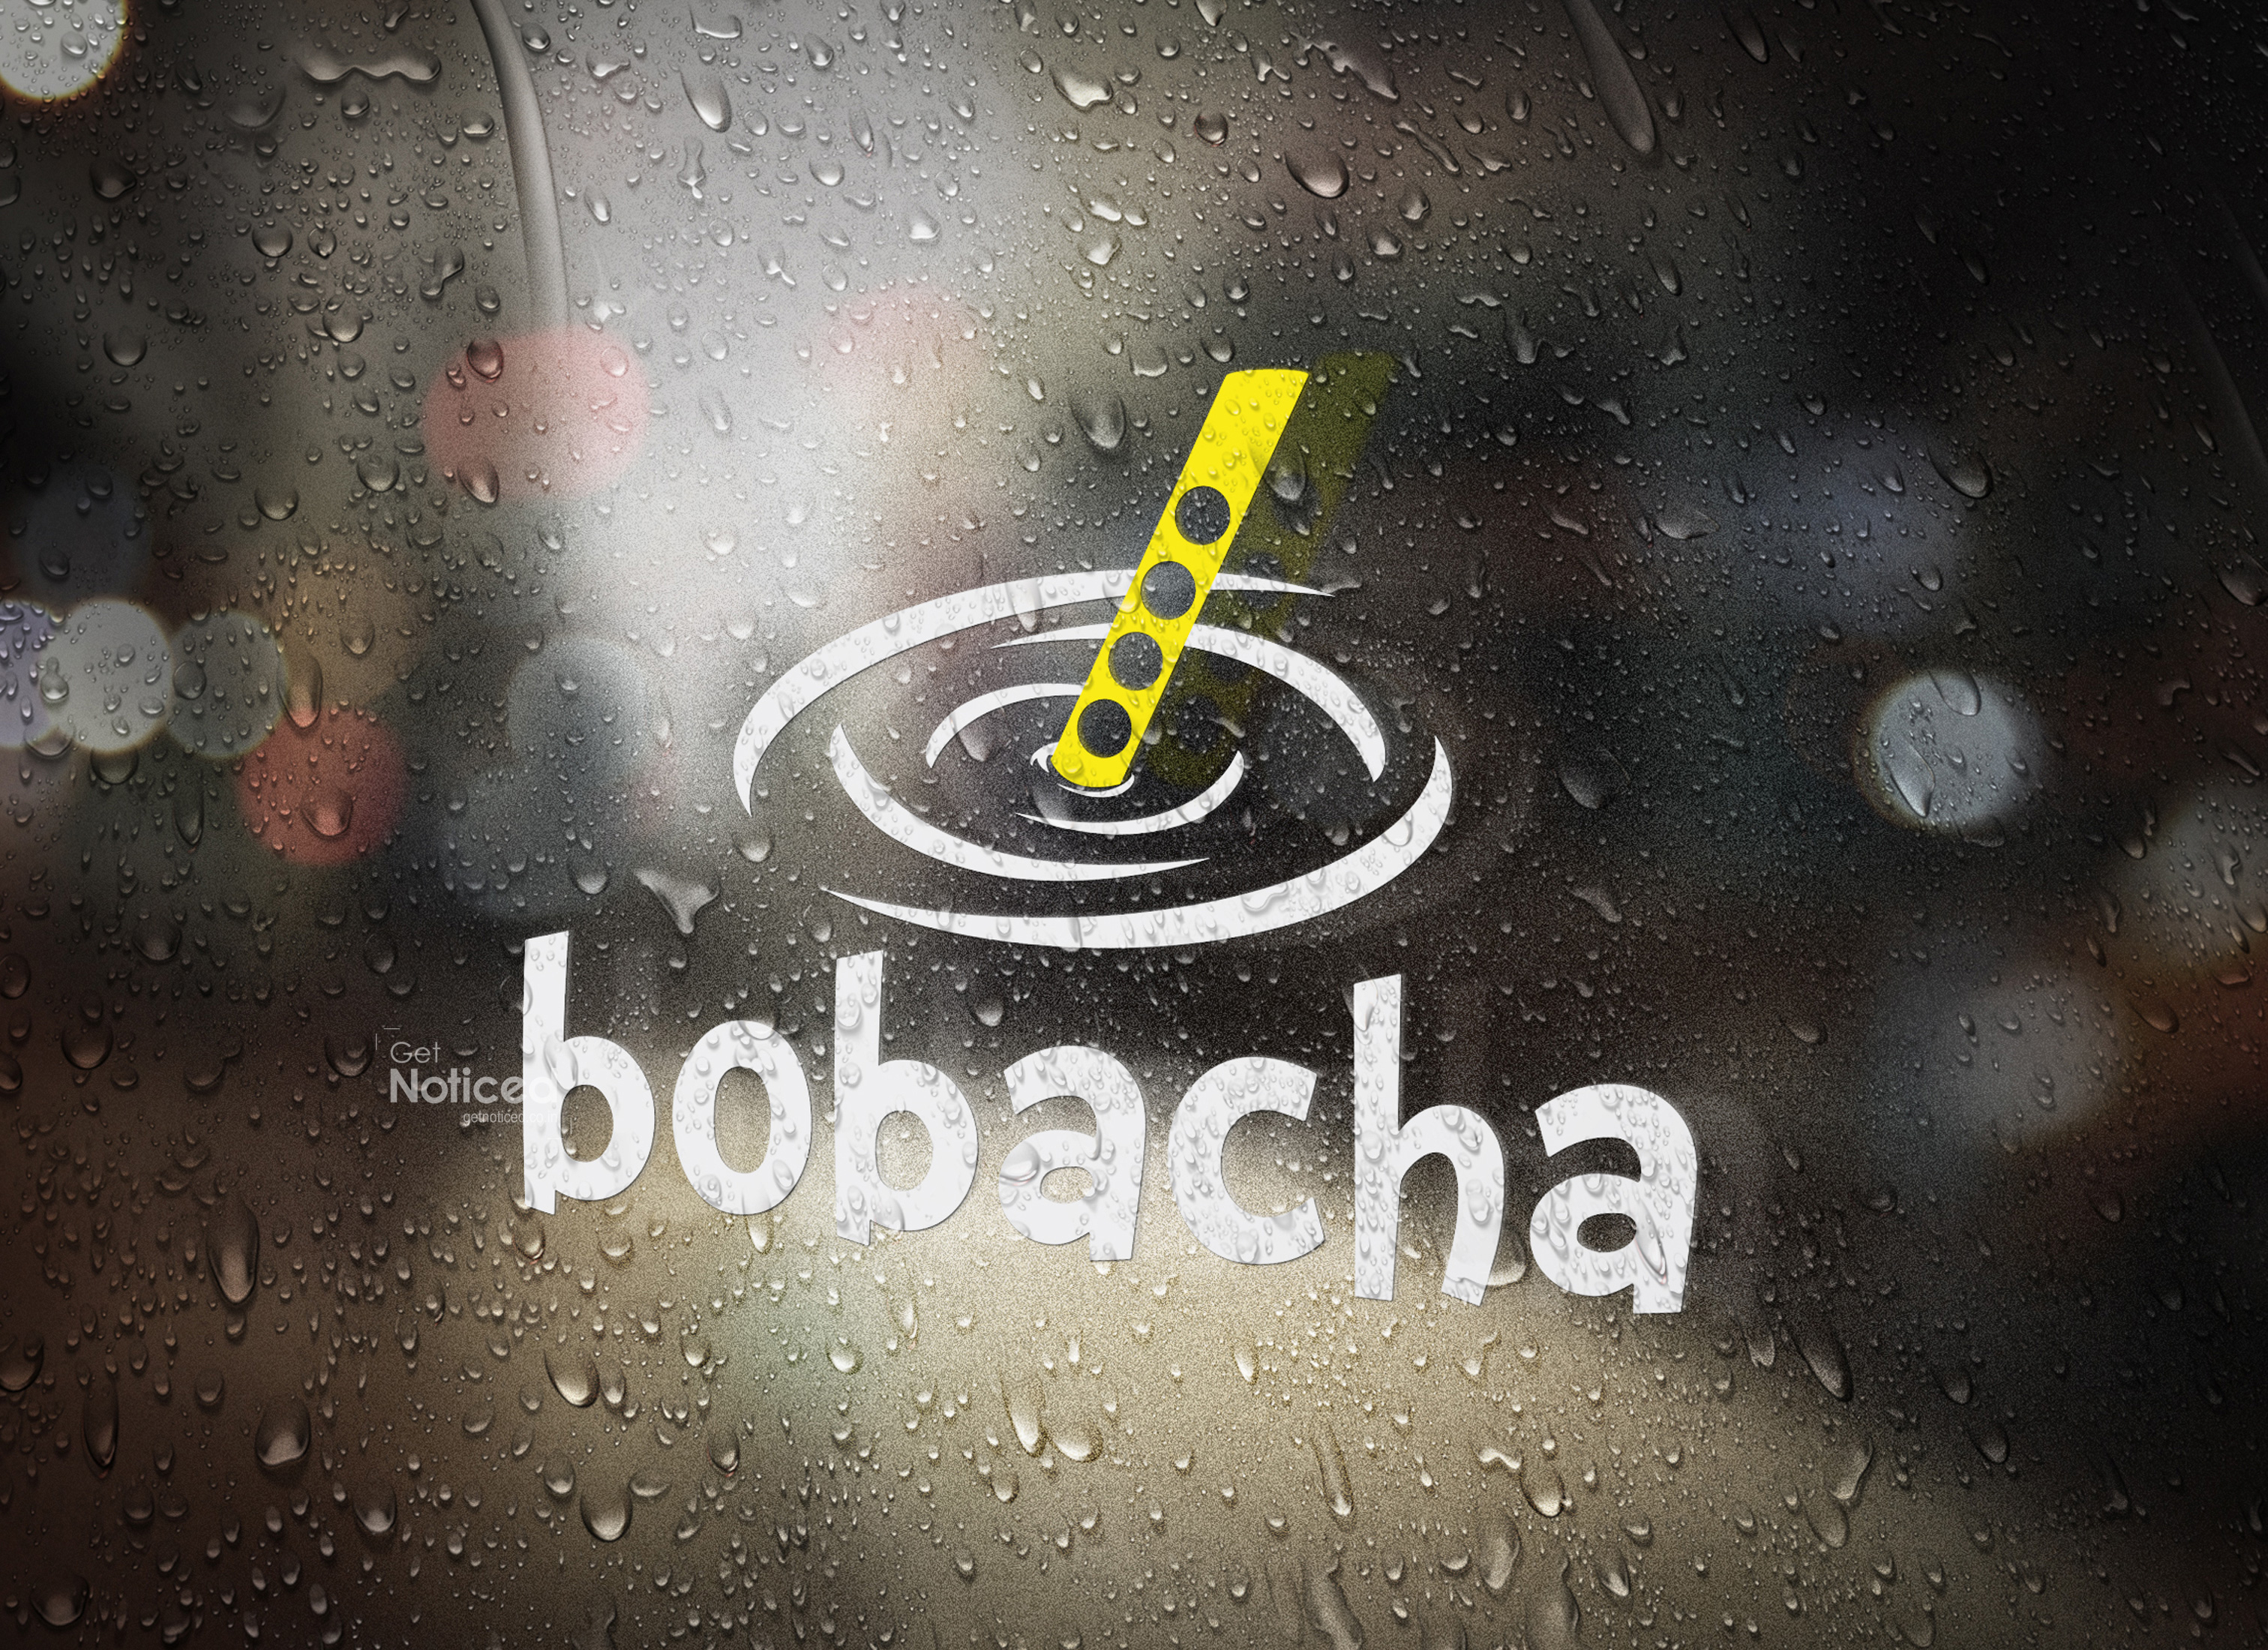 Bobacha Logo Design